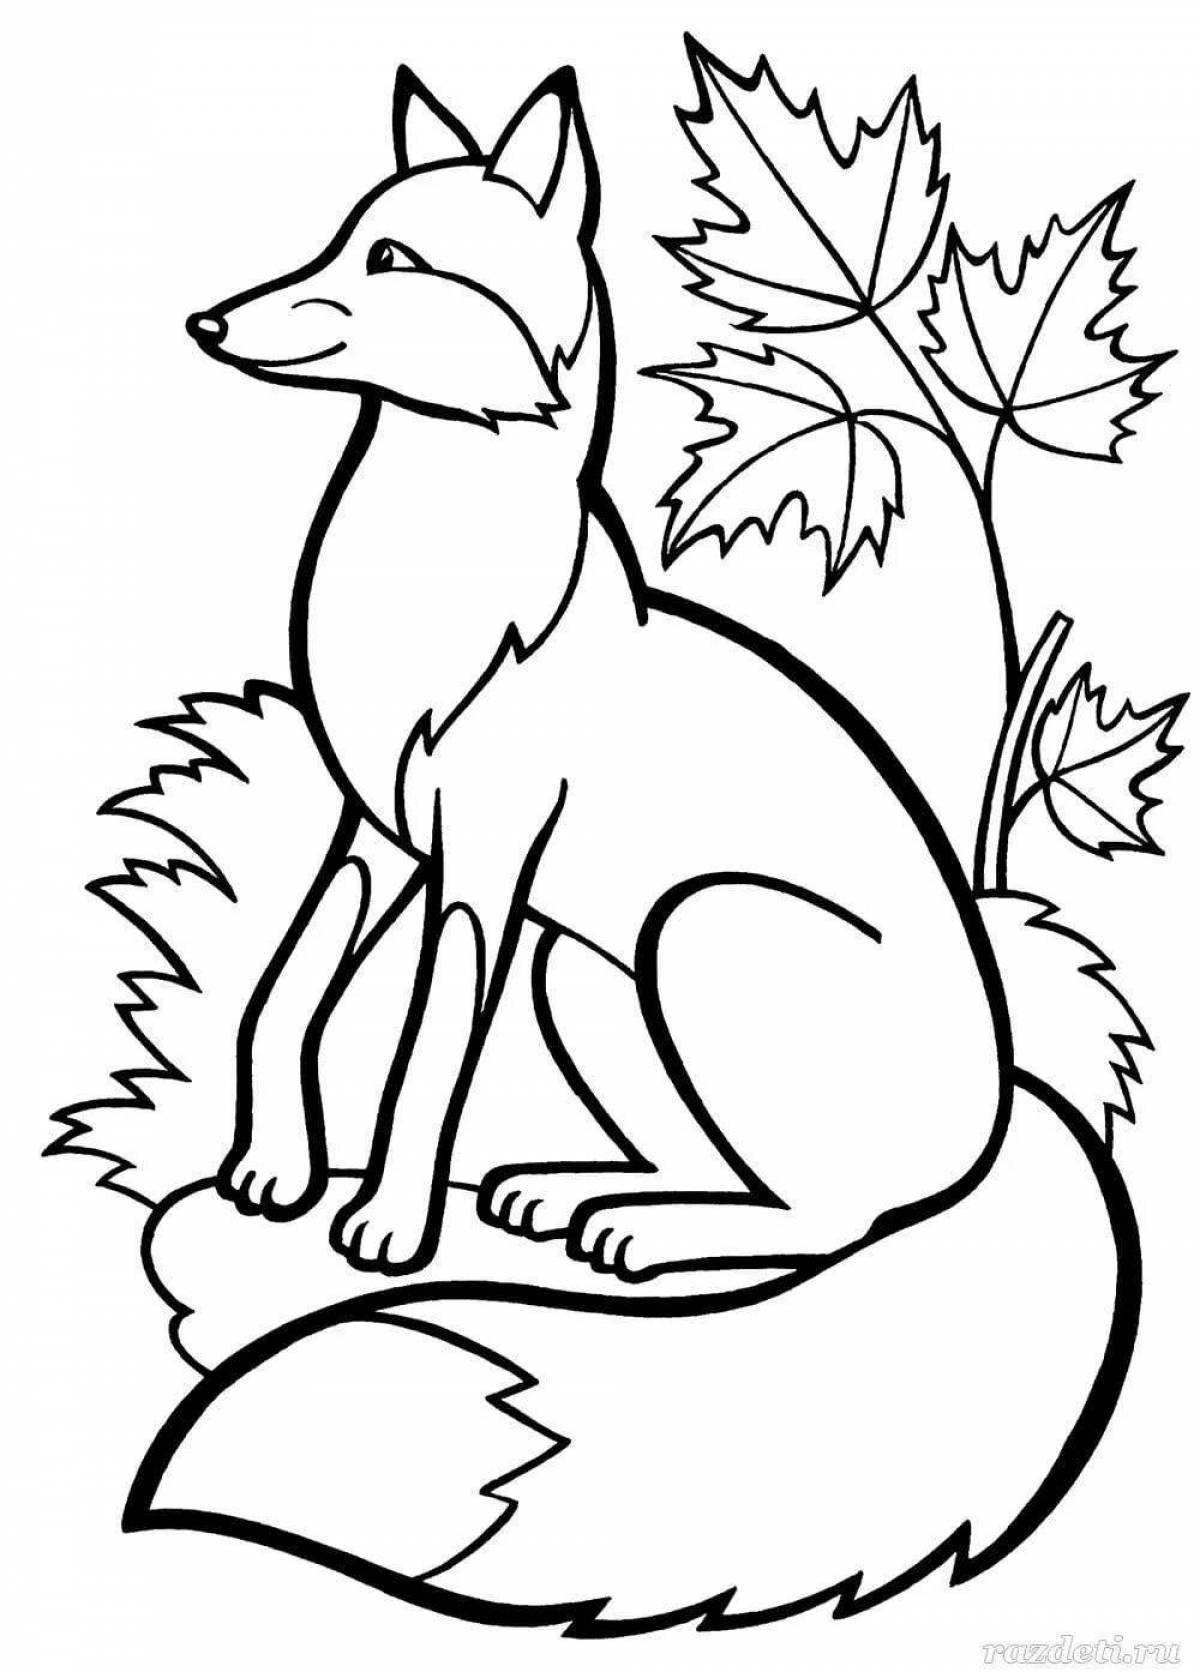 Alert sitting fox coloring book